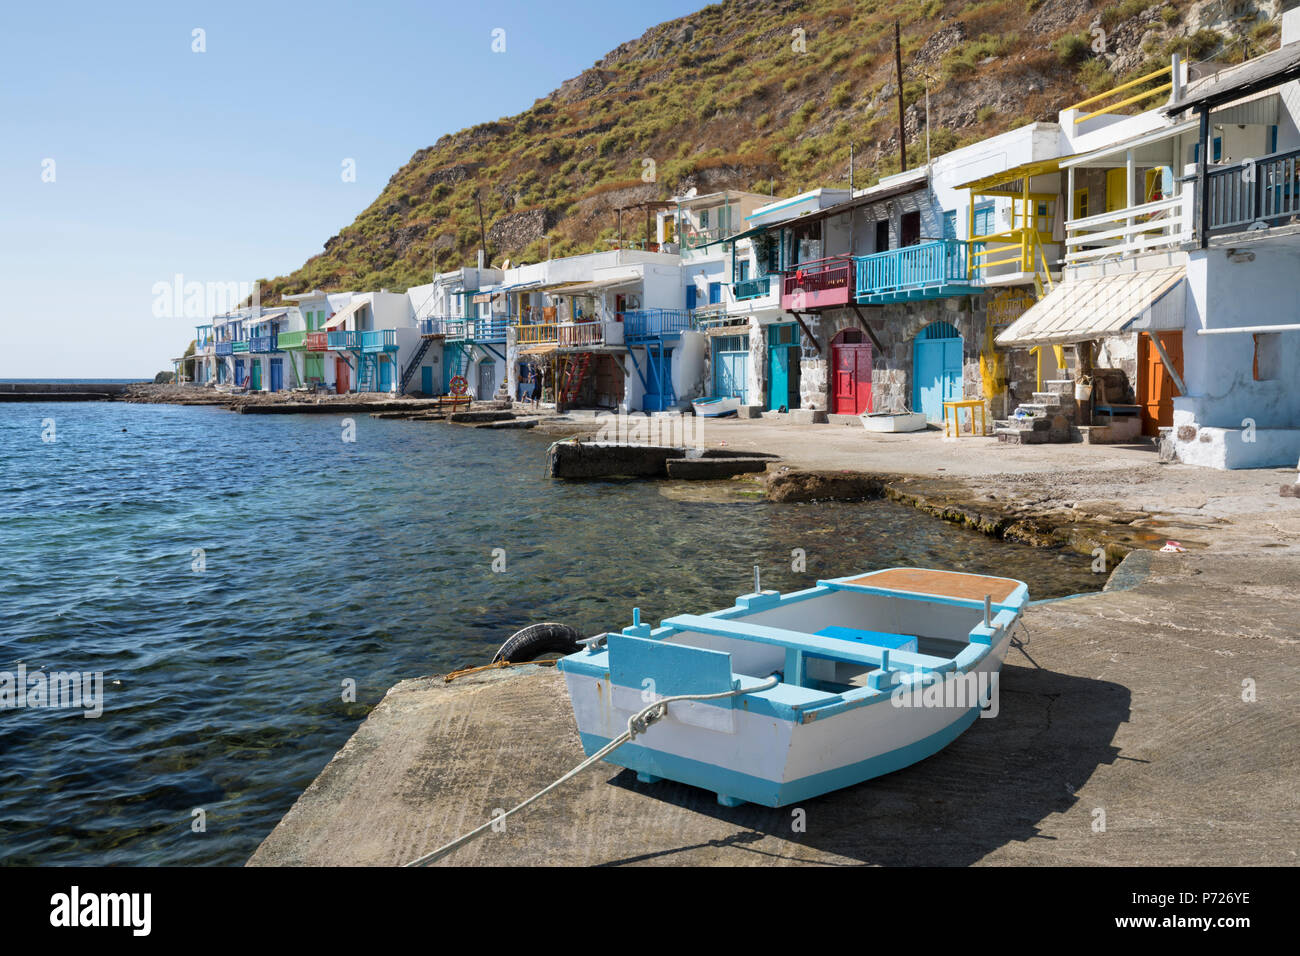 Coloridas casas barco de pescadores, Klima, Milos, Cyclades, islas griegas del Mar Egeo, Grecia, Europa Foto de stock